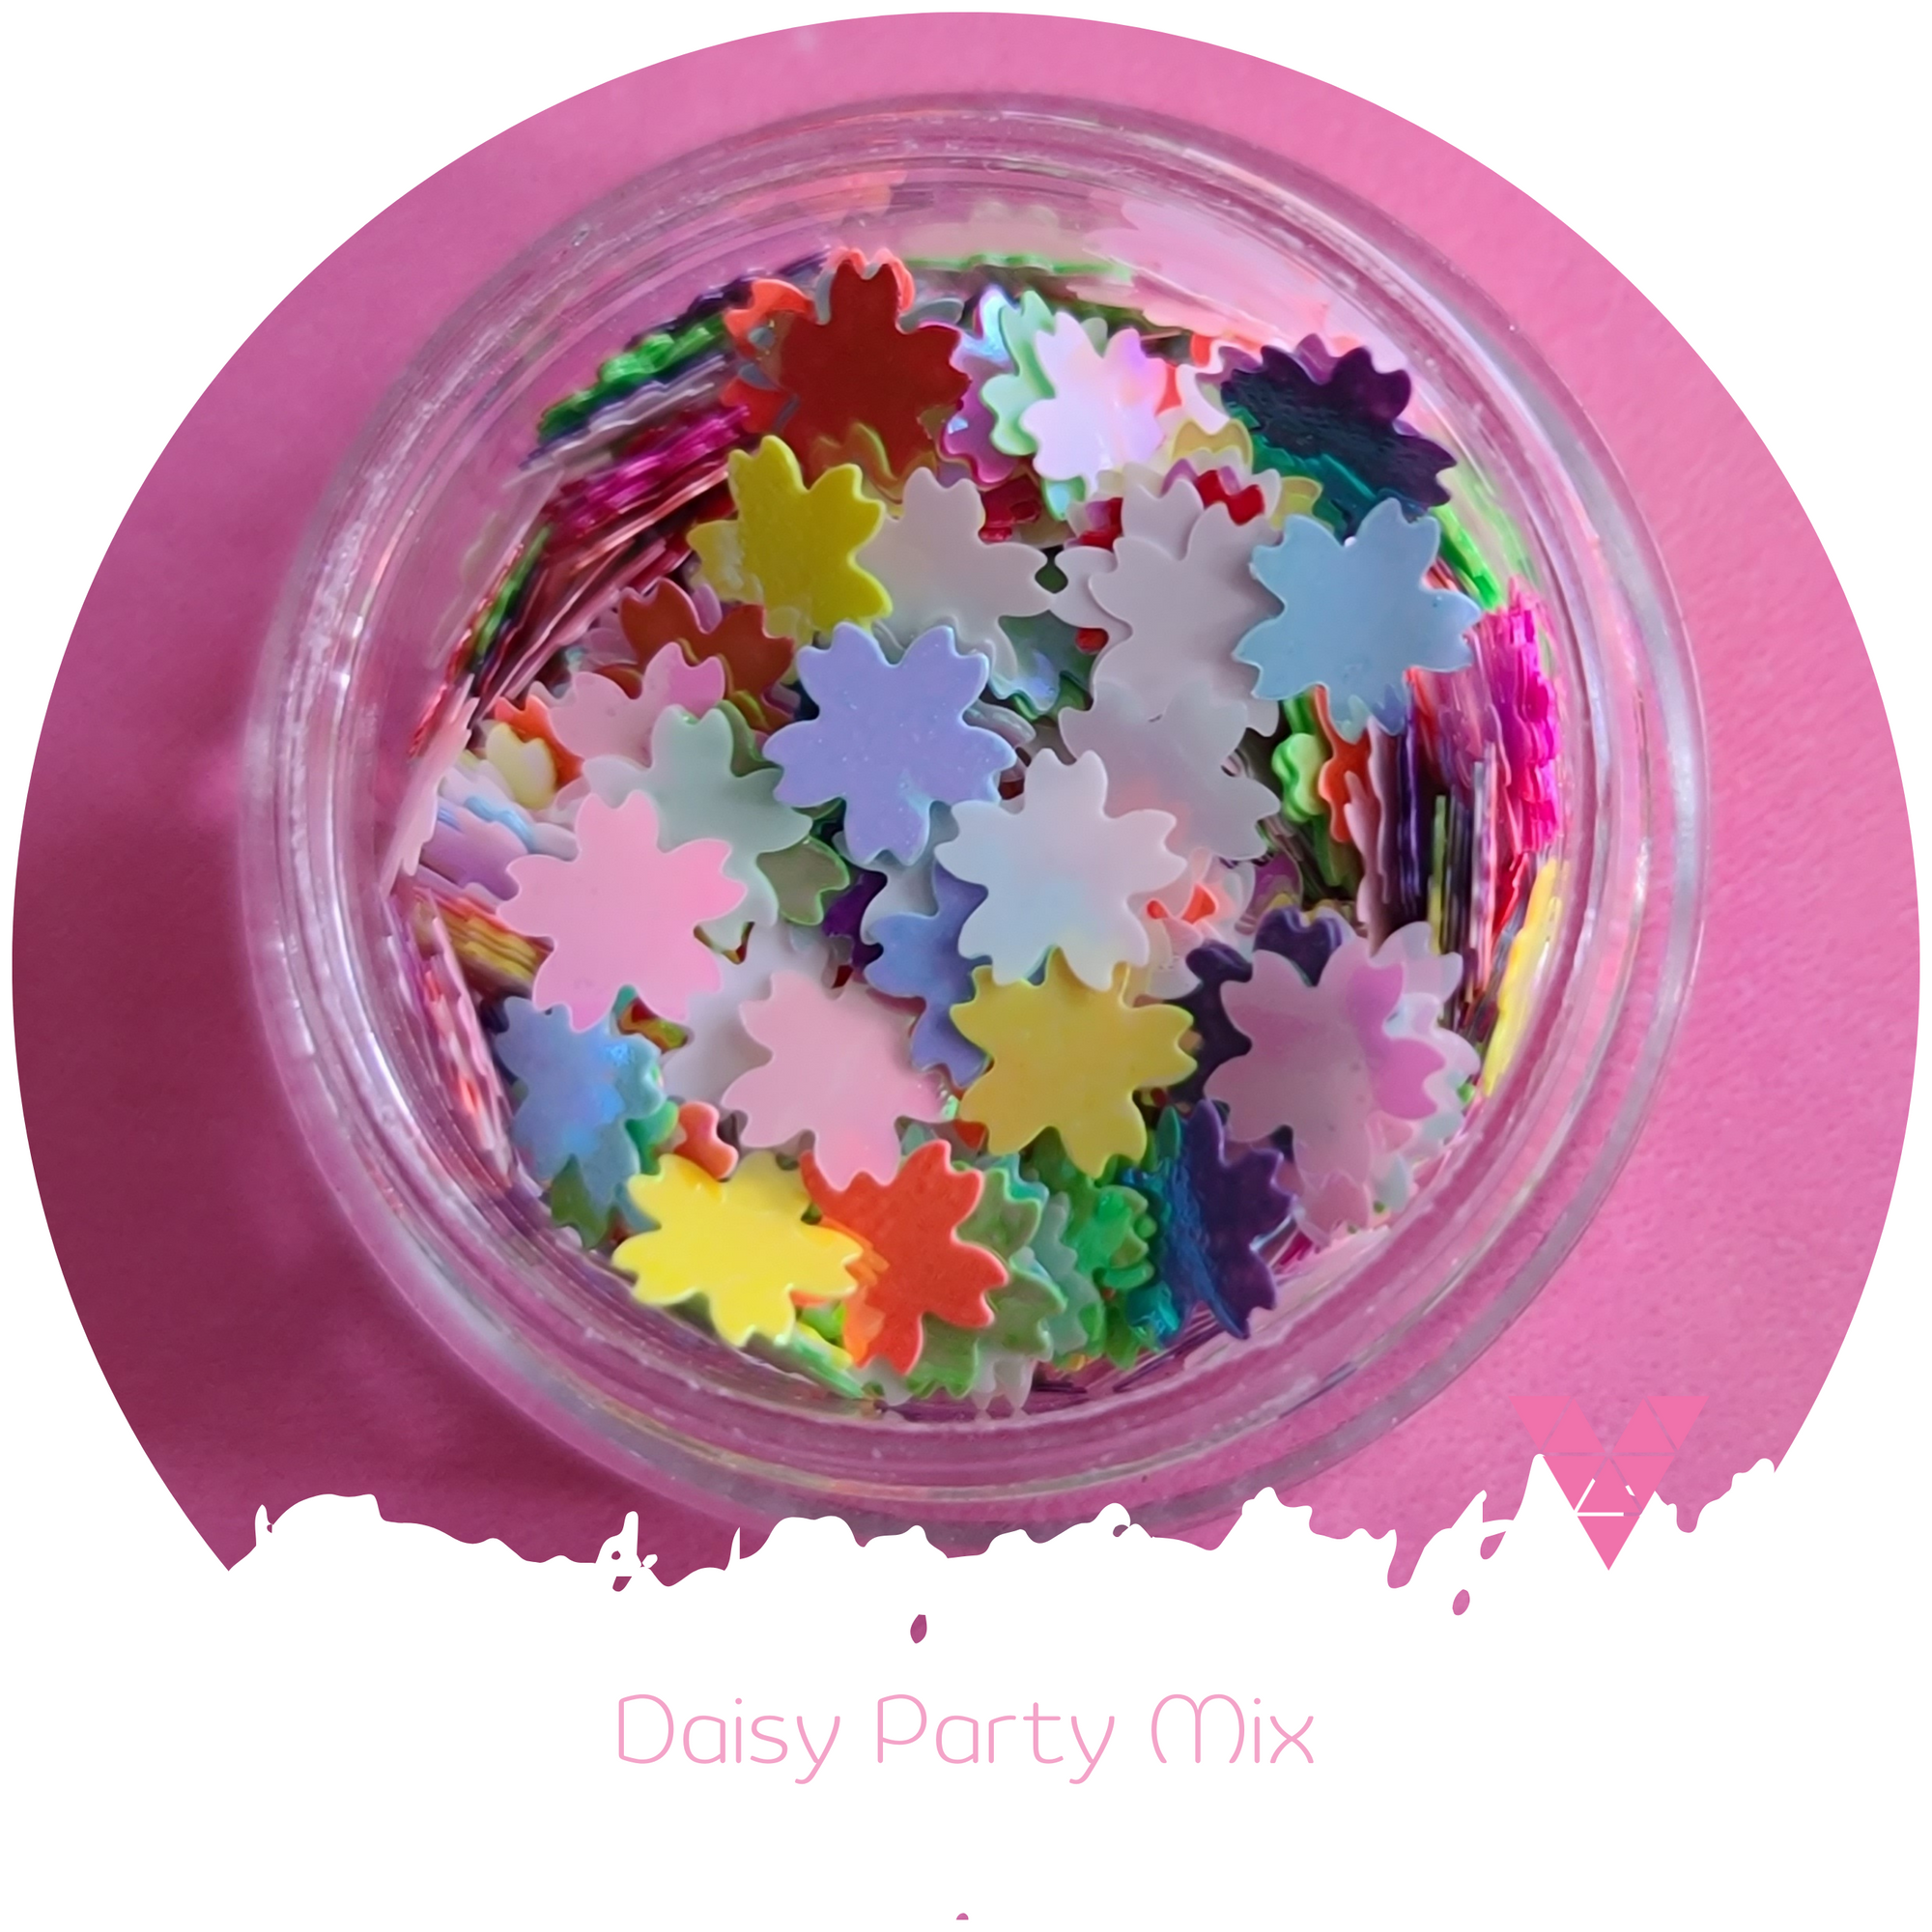 Daisy Party Mix